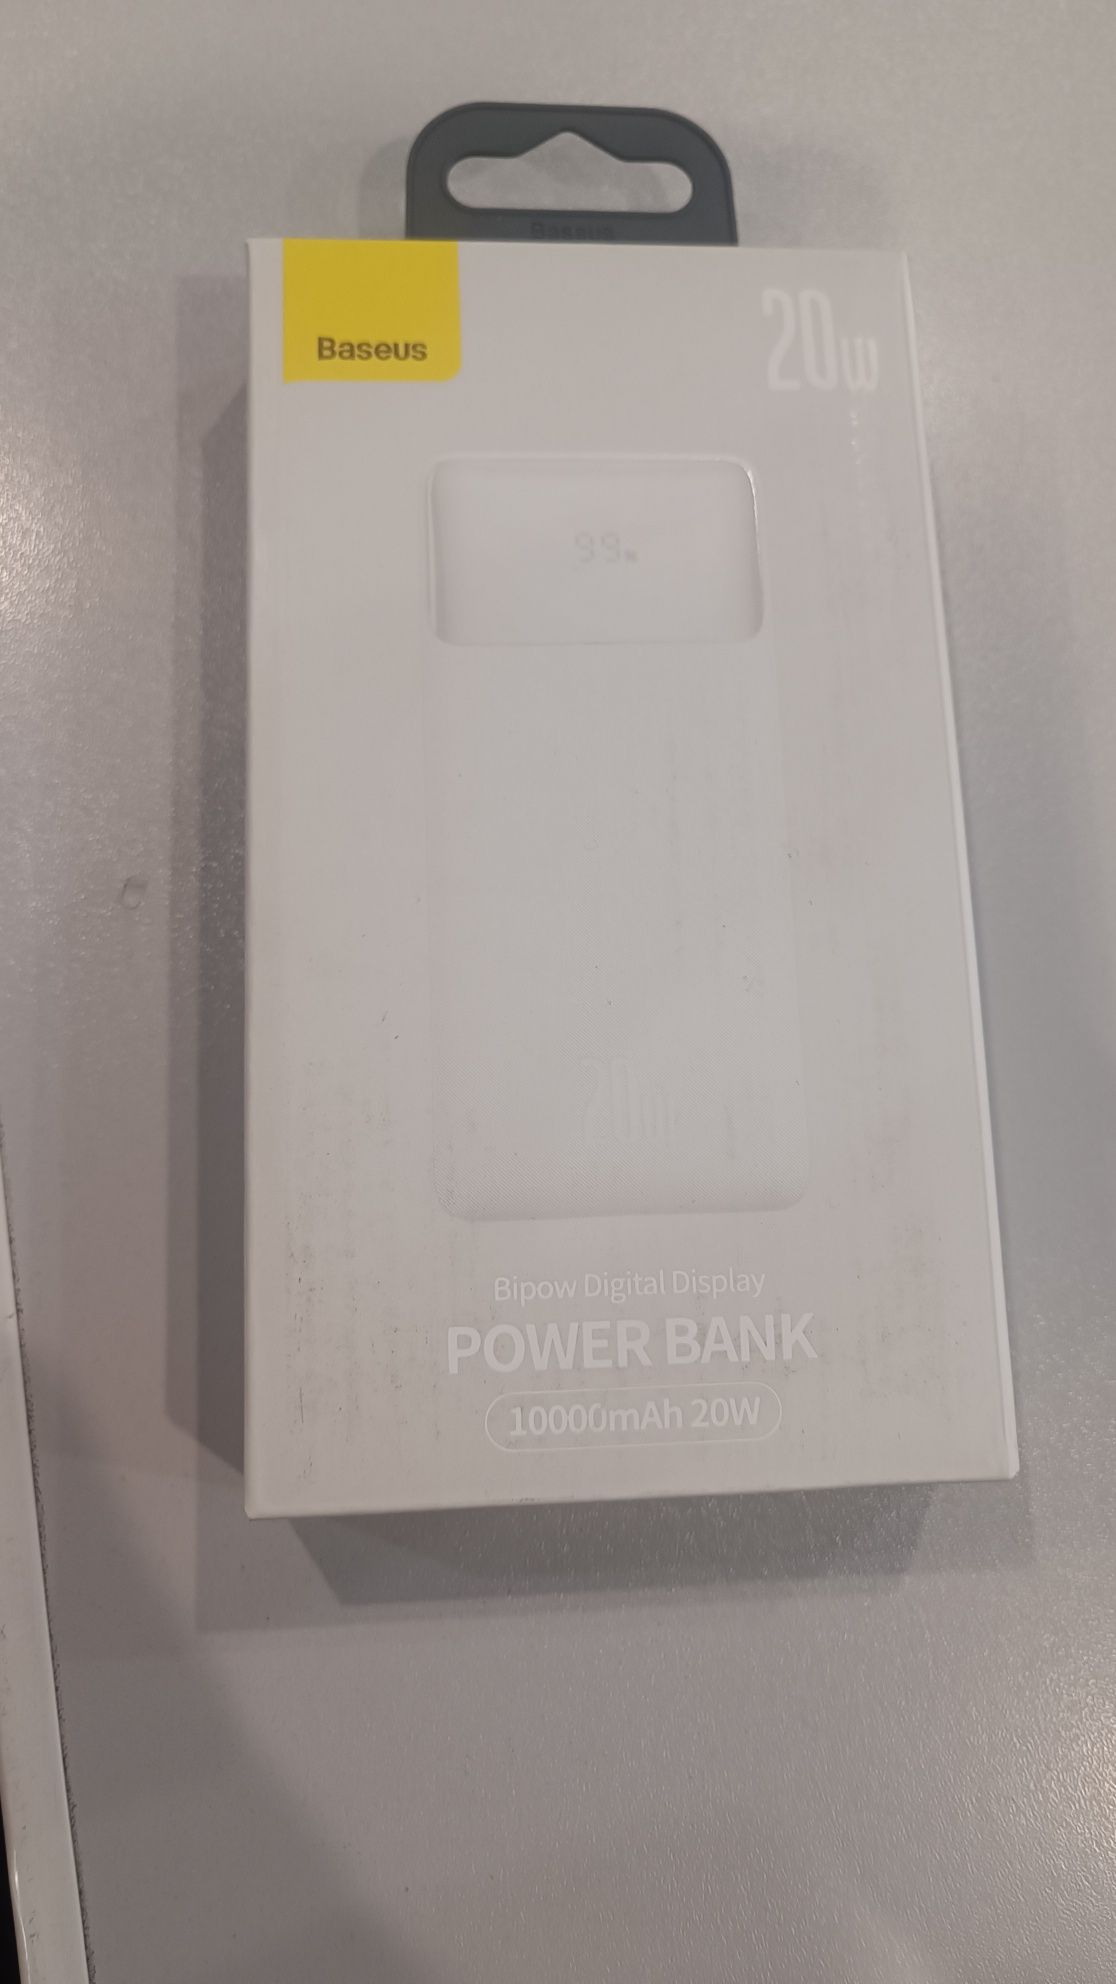 Powerbank baseus
Внешний аккумулятор Baseus Bipow 10000mAh